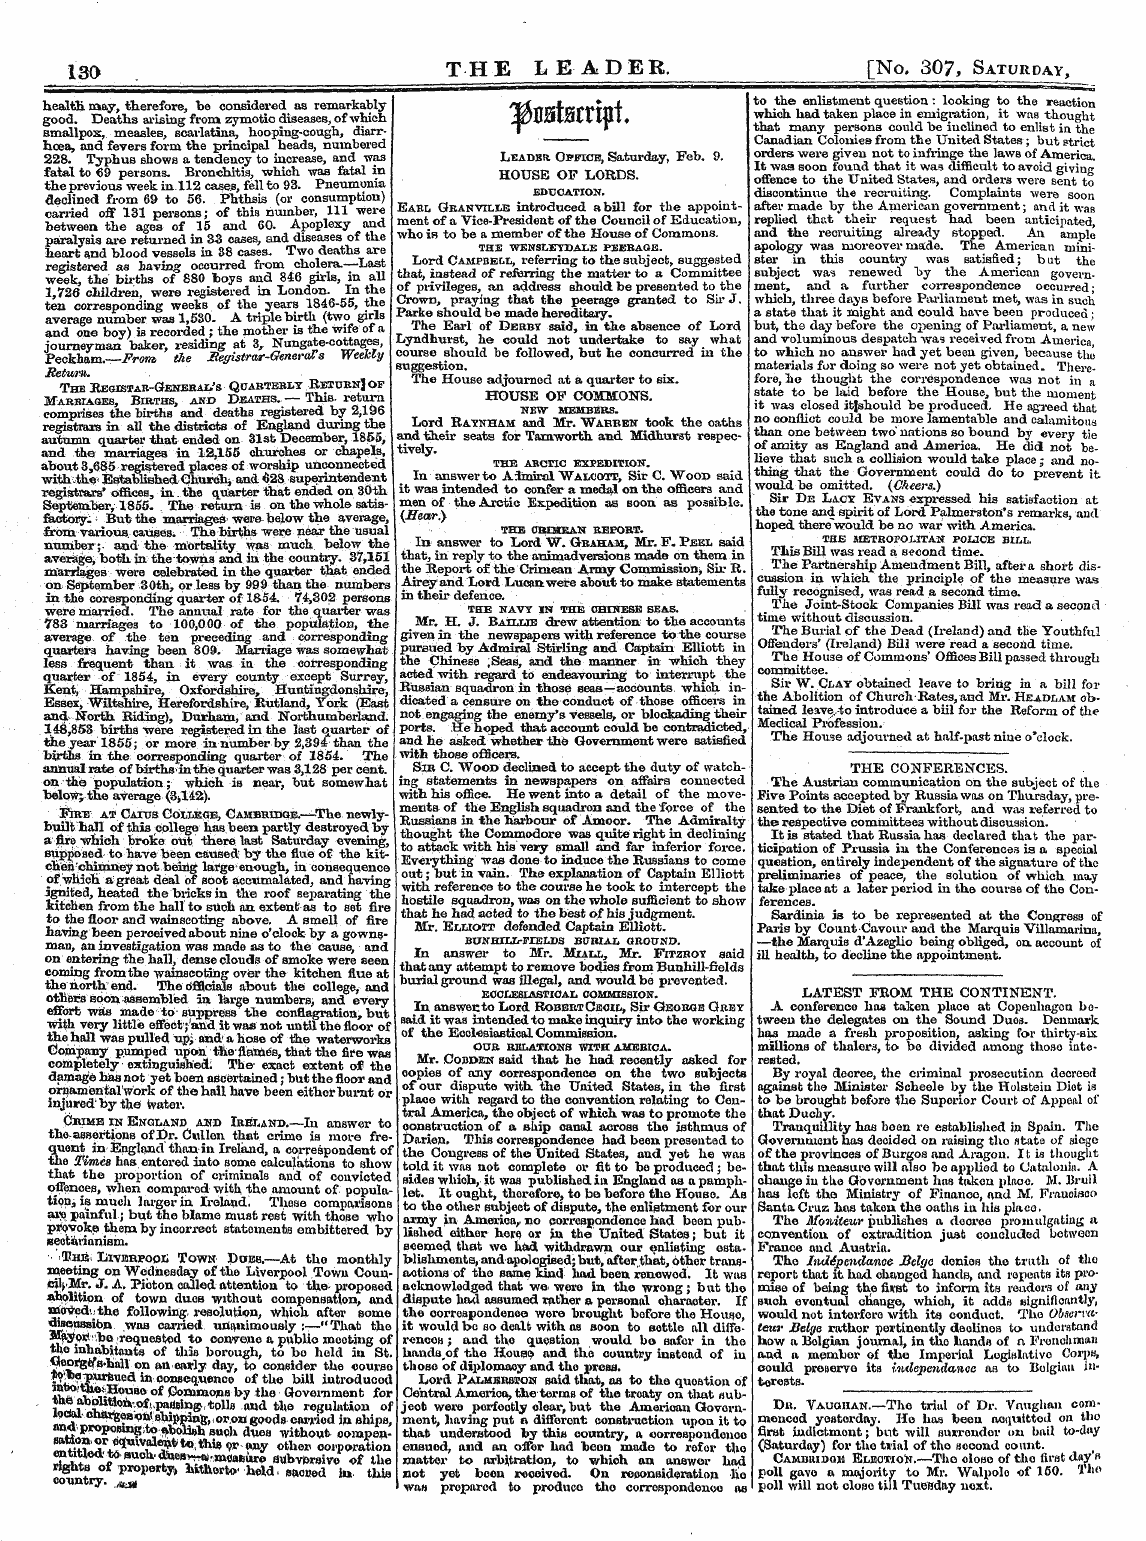 Leader (1850-1860): jS F Y, 2nd edition - ^Ttttf Ds«»Vtn4 Ffiubwtxlm. T R —-R